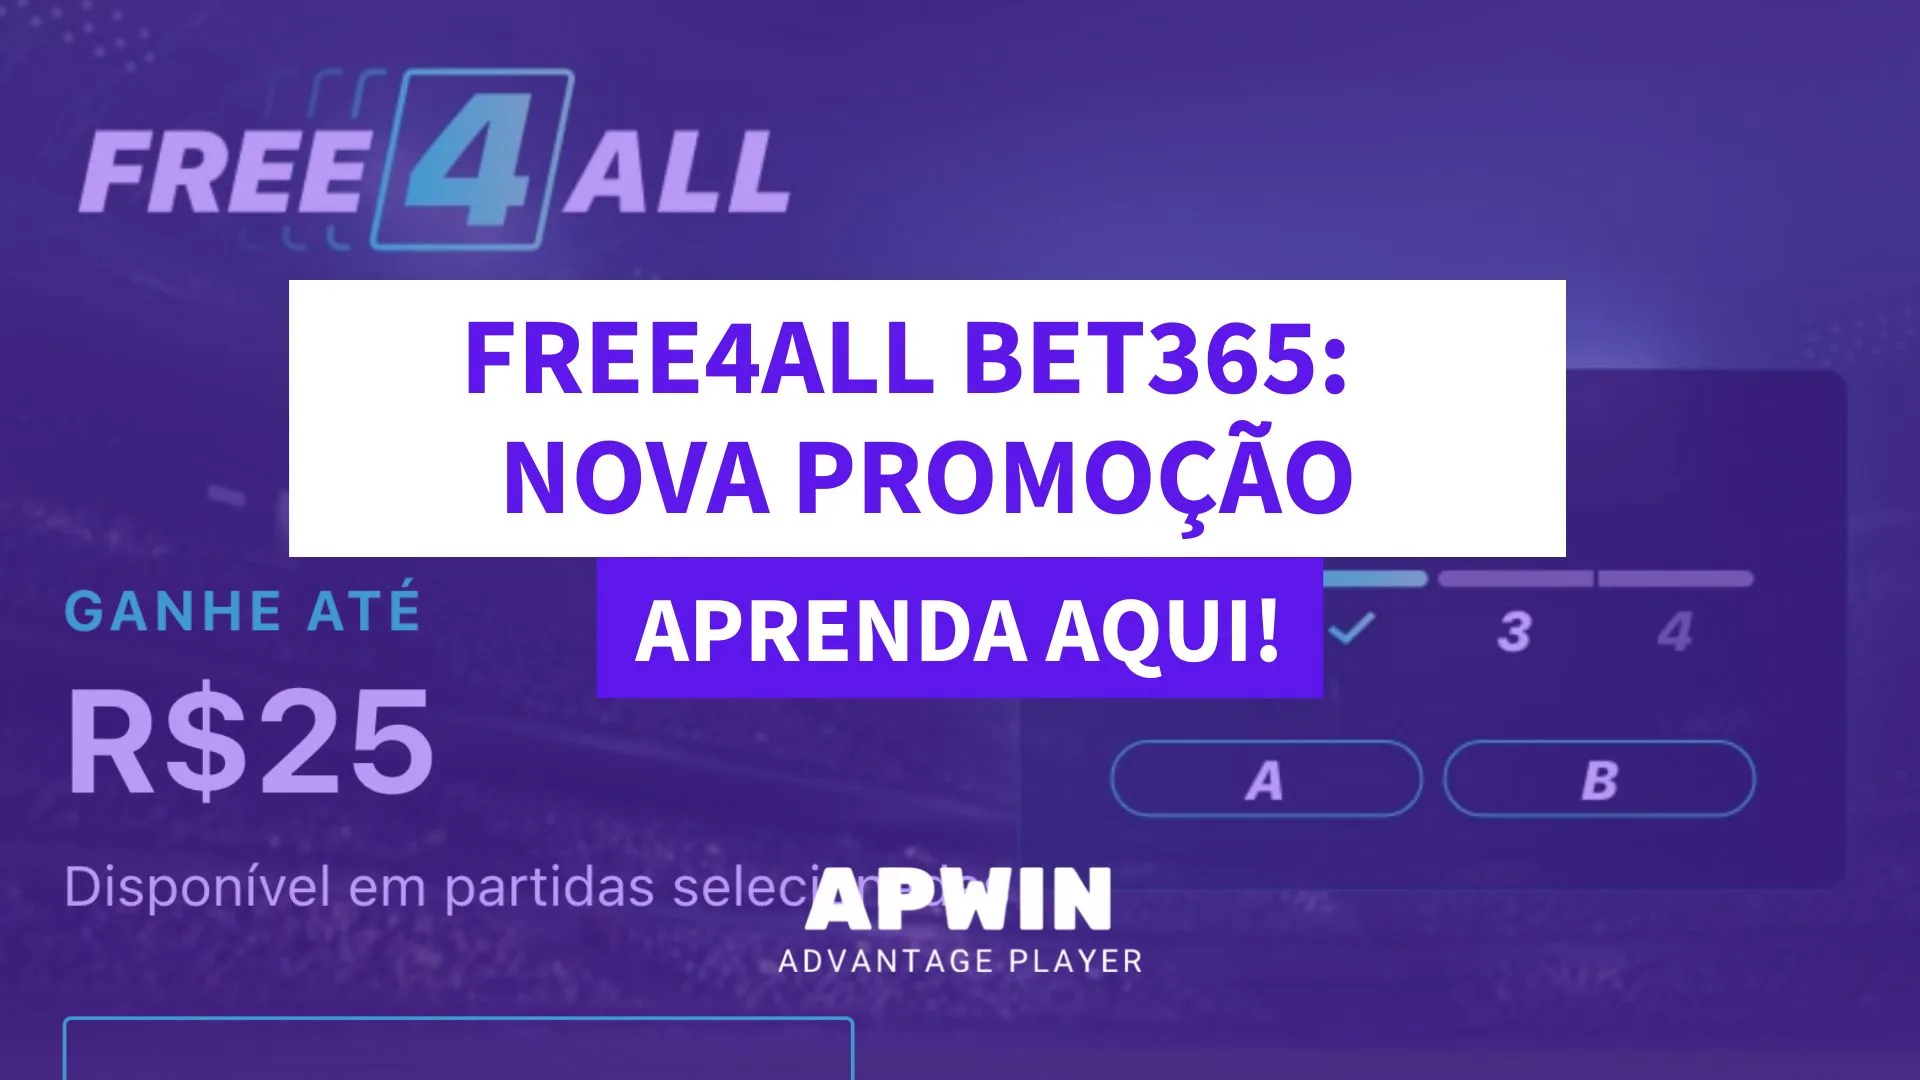 Free4All - Como ganhar R$ 25,00 em aposta grátis da Bet365